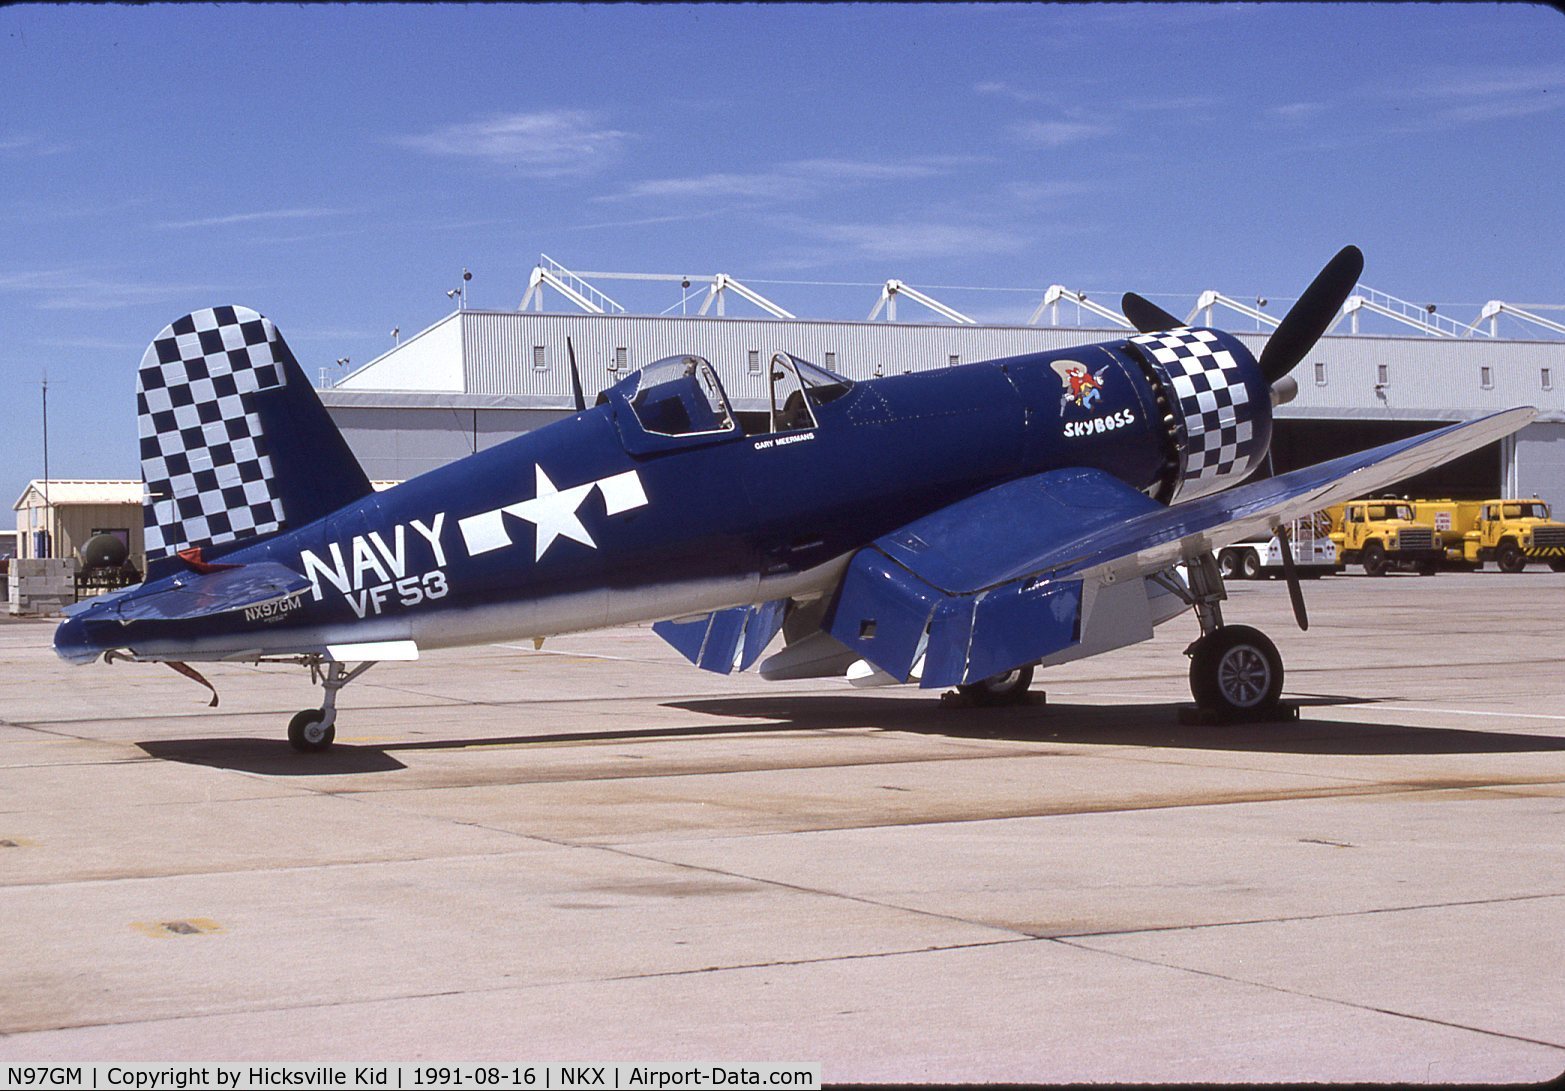 N97GM, 1943 Goodyear FG-1D Corsair C/N 67089, FG-1D BuNo 67089 taken at NAS Miramar 16 Aug 1991